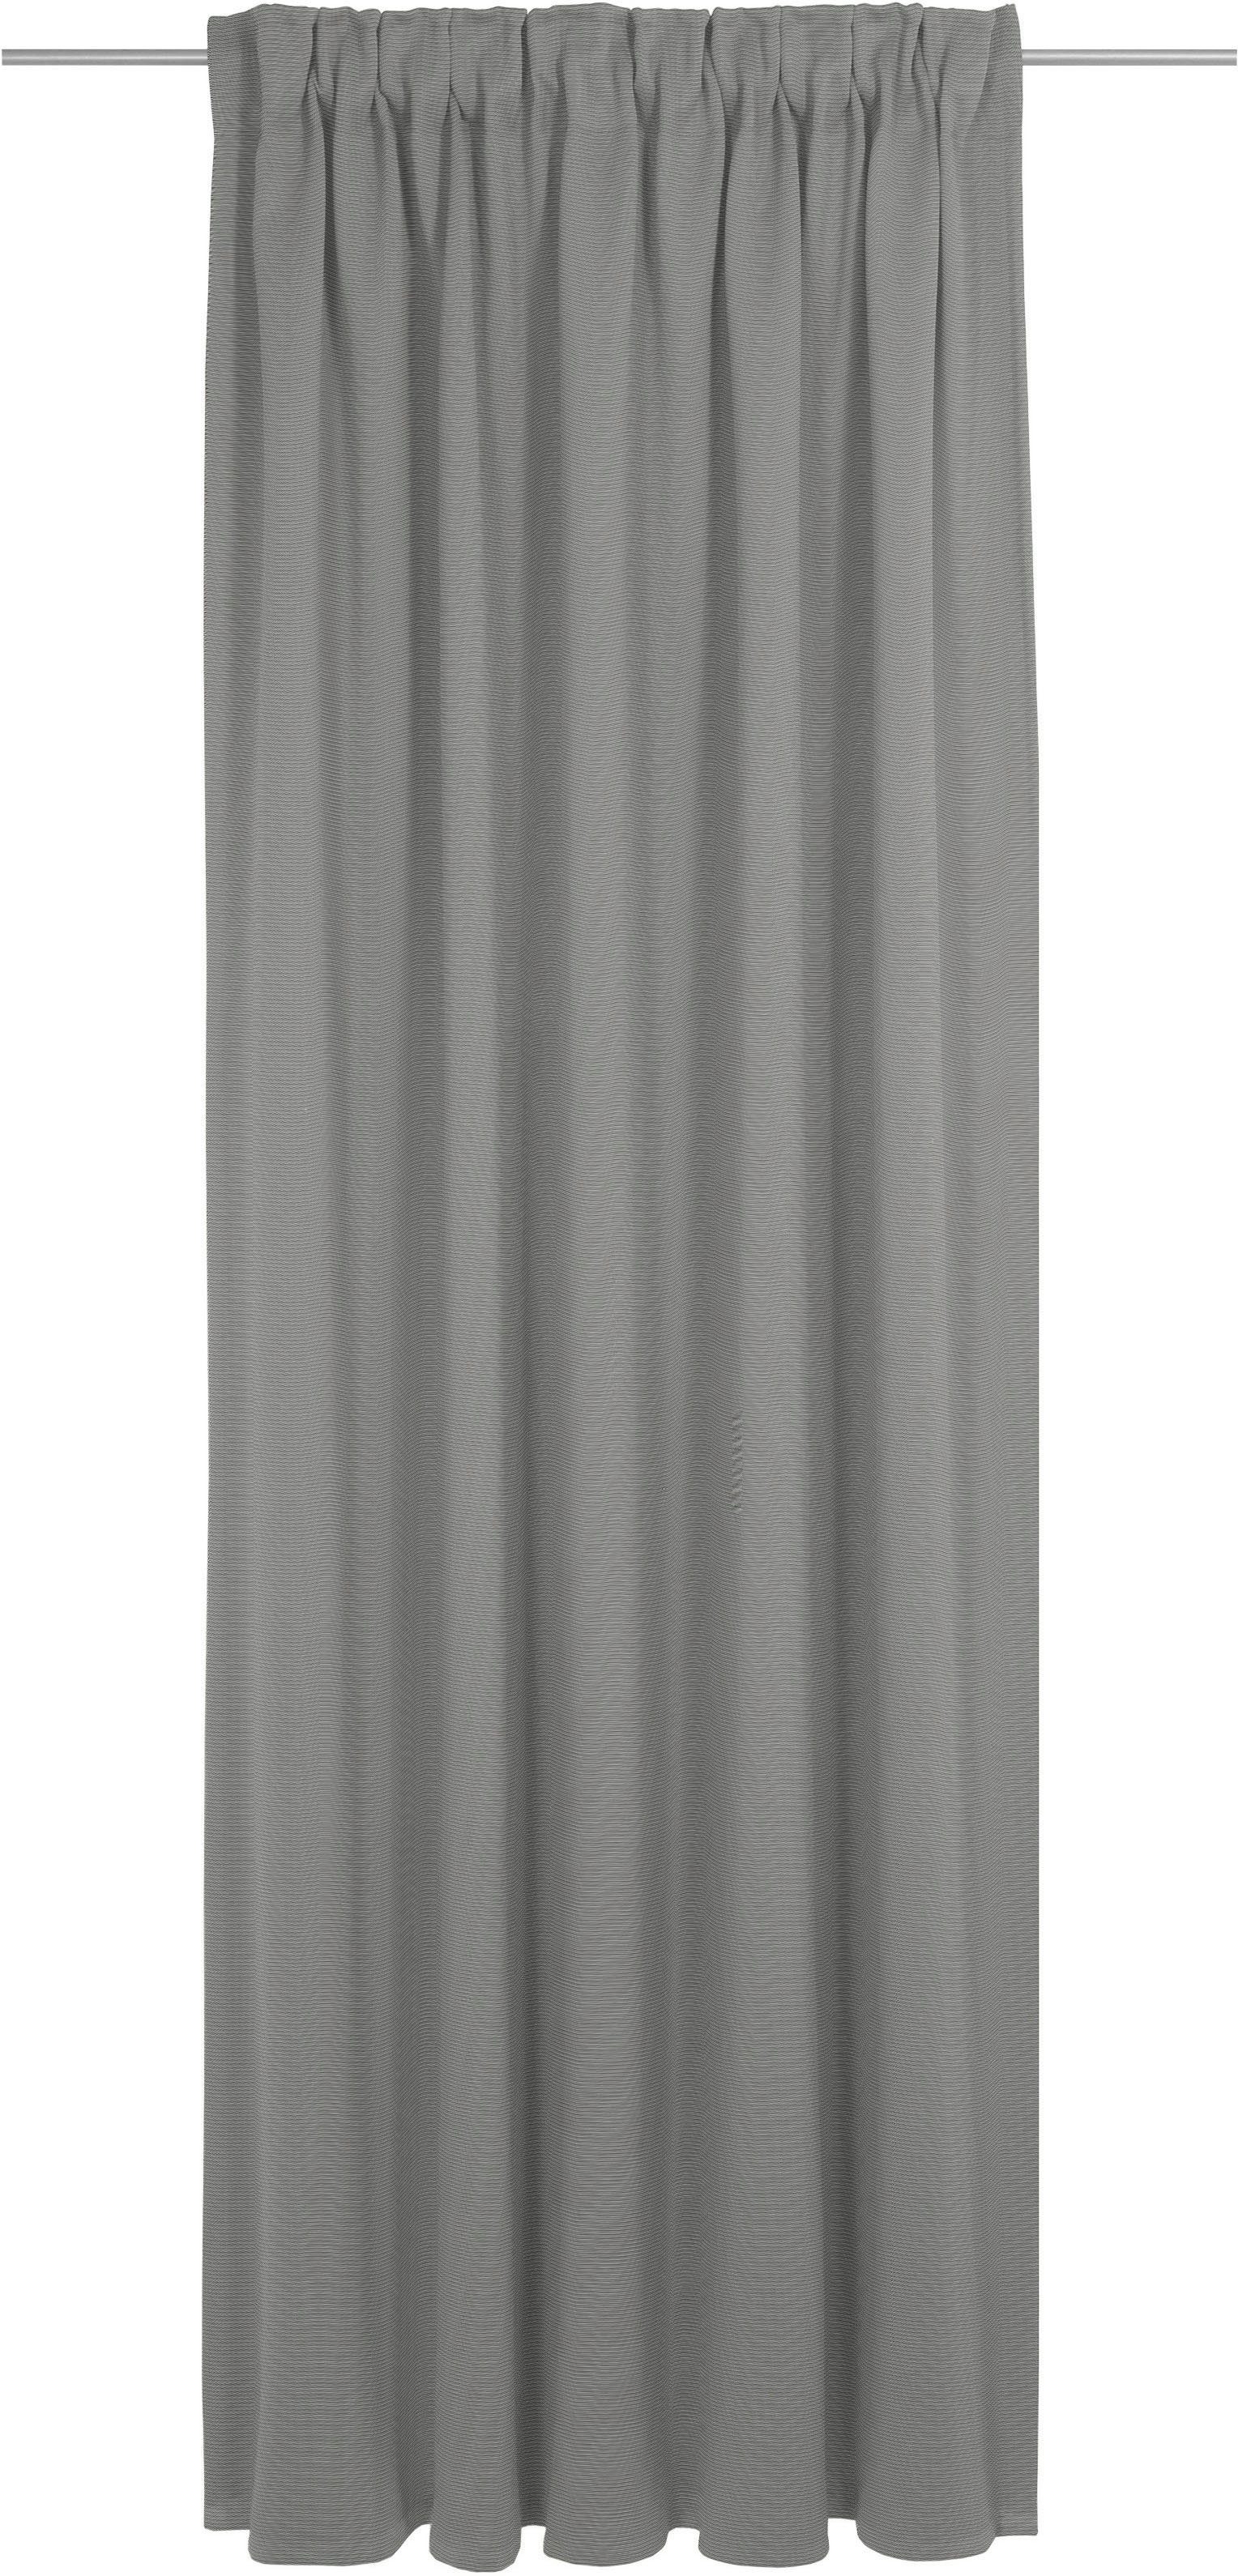 Vorhang Uni Collection light, Wirth, Multifunktionsband (1 St), blickdicht, nach Maß dunkelgrau